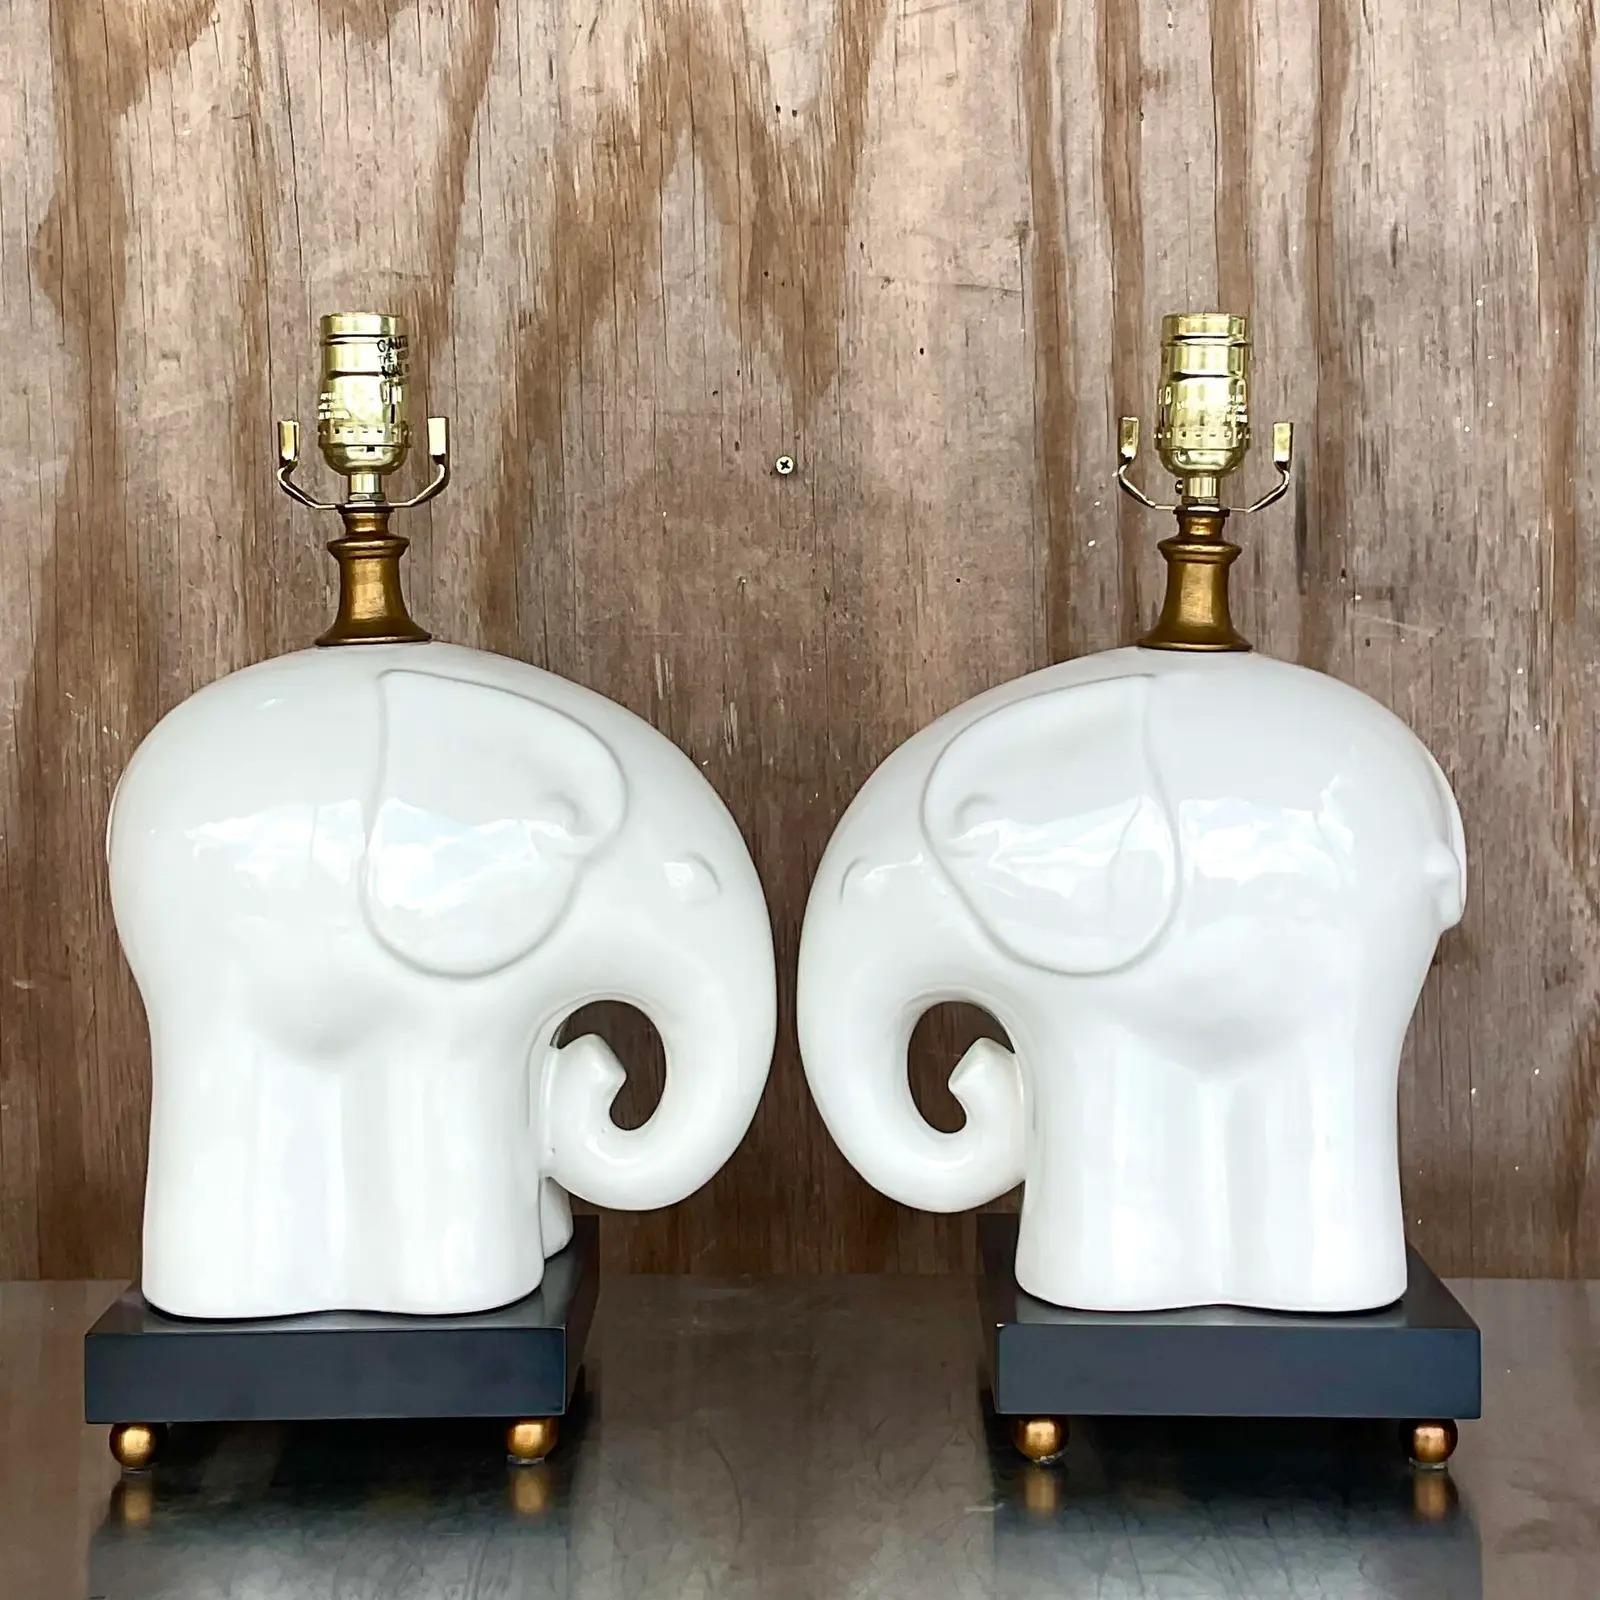 Fantastique paire de lampes de table vintage en céramique émaillée. De magnifiques éléphants Blanc De Chine sur un piédestal noir contrastant. Troncs en l'air pour la chance ! Acquis d'une propriété de Palm Beach.